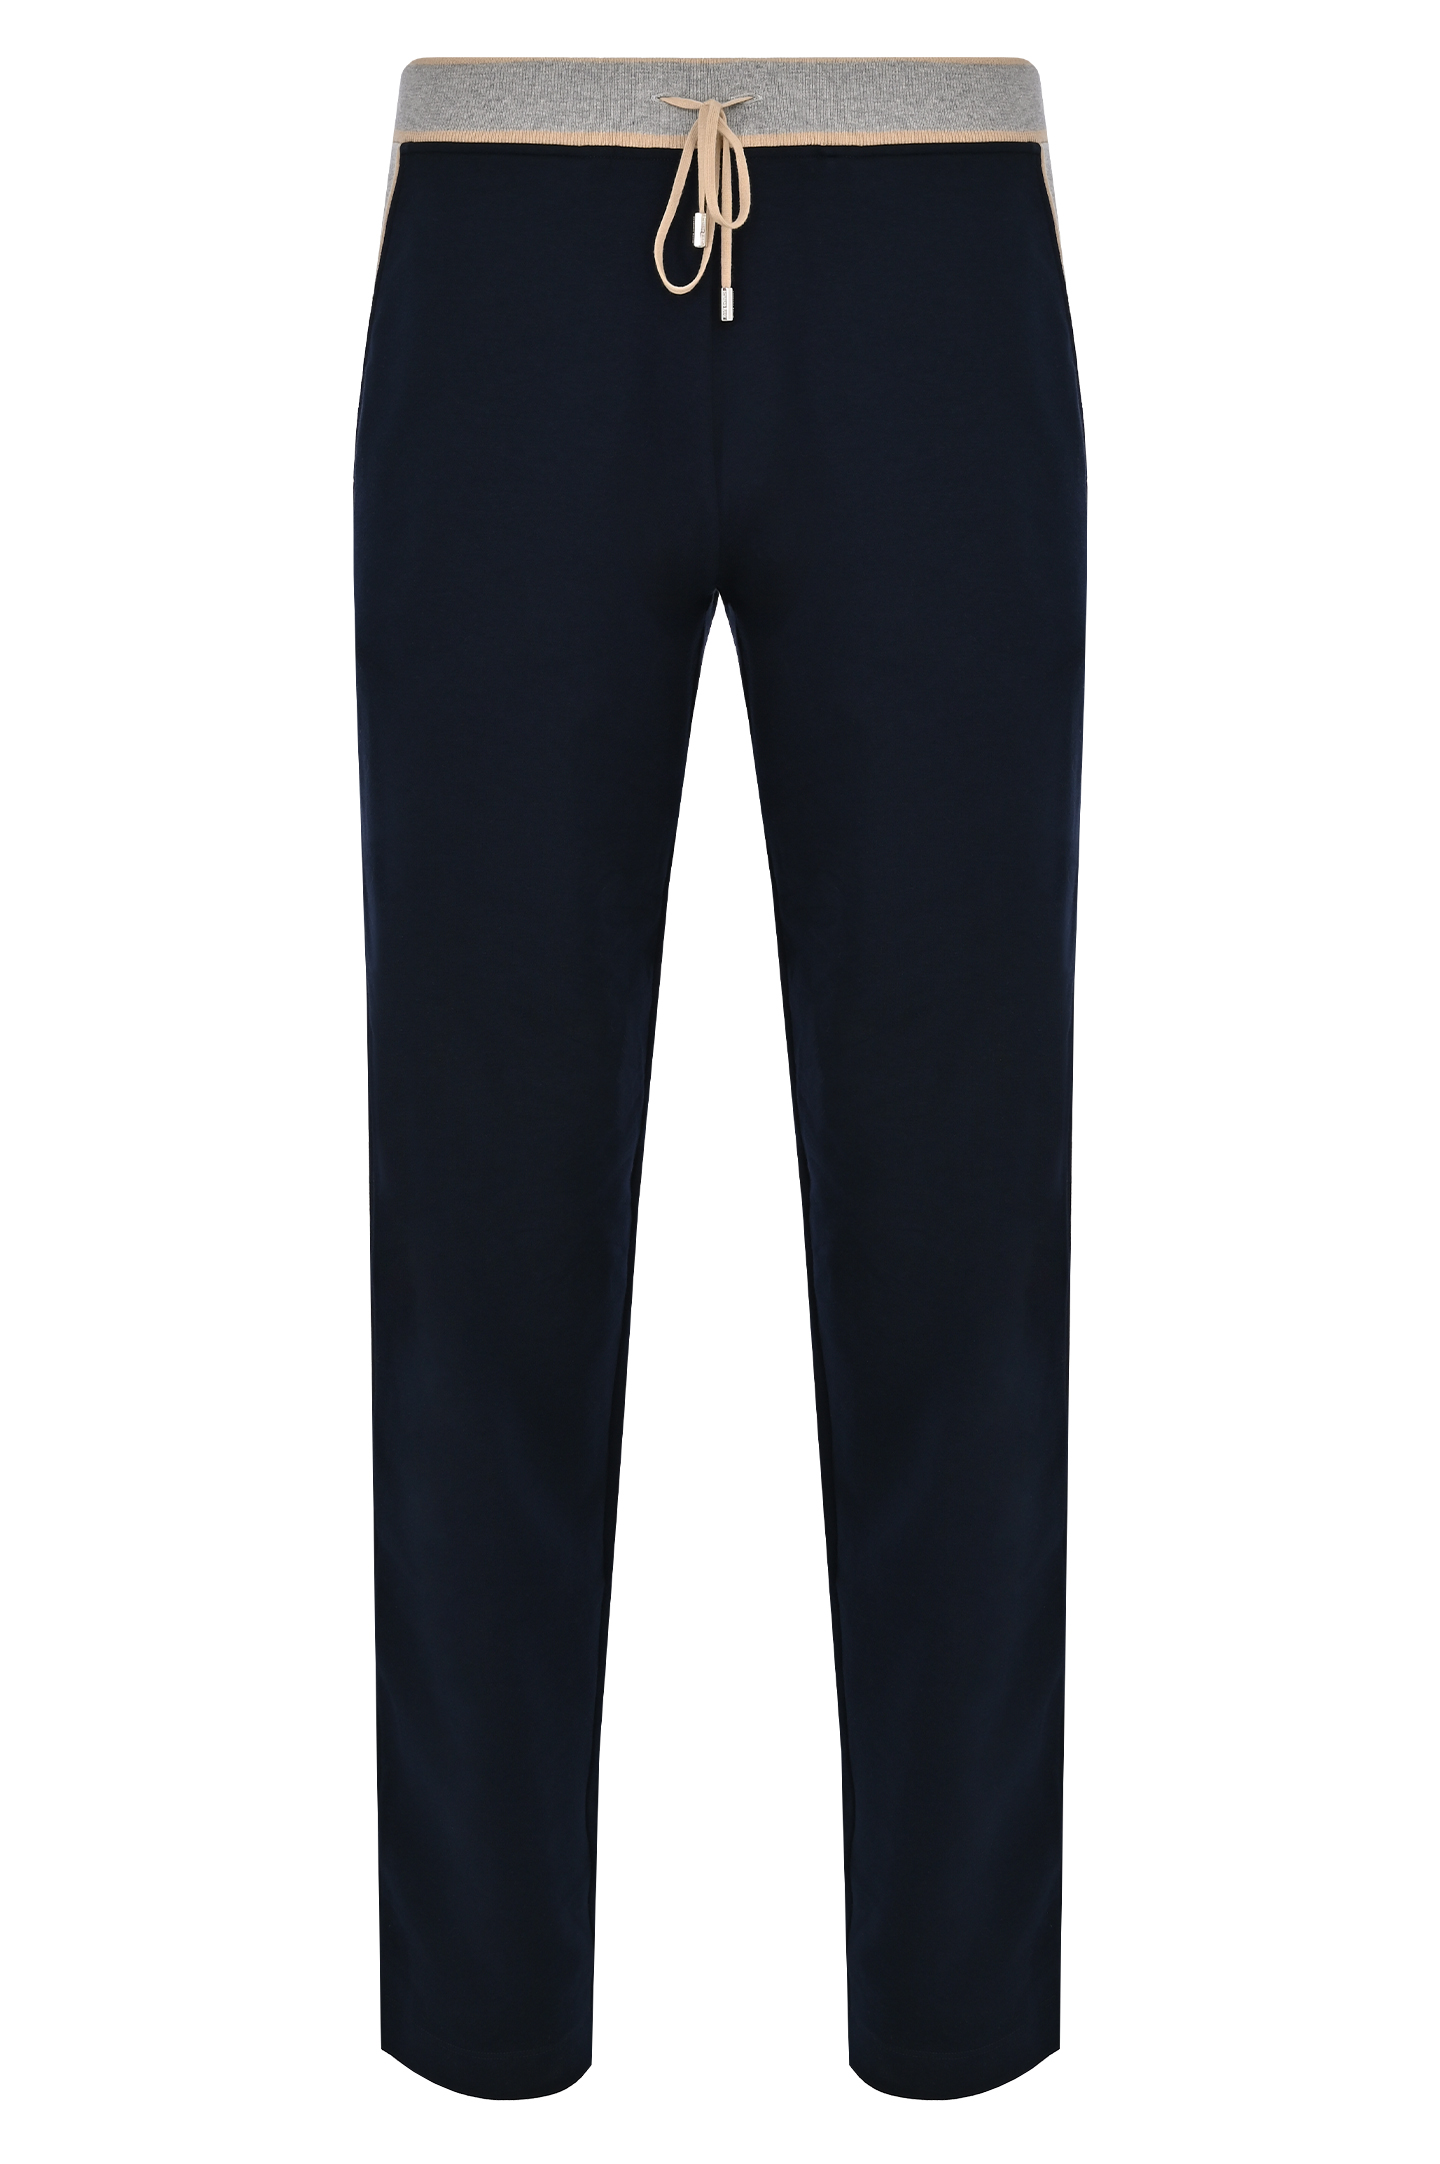 Спортивные брюки с логотипом STEFANO RICCI K111030P3D T24151 , цвет: Синий, Мужской